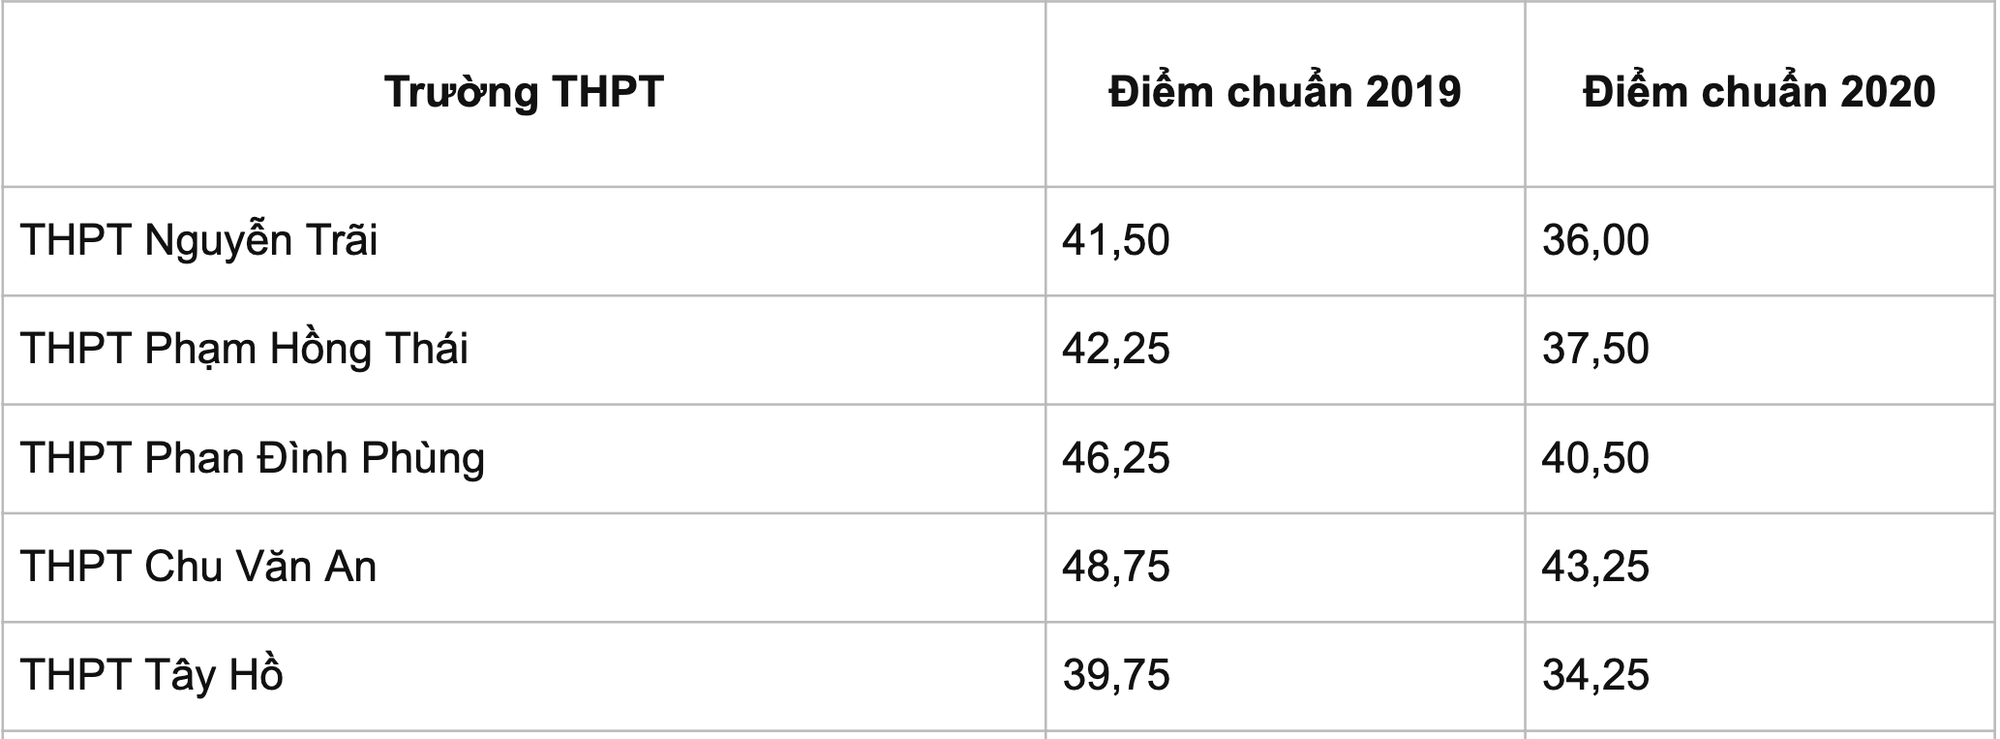 Điểm chuẩn lớp 10 ở Hà Nội có thể tăng từ 2 đến 3 điểm - Ảnh 2.